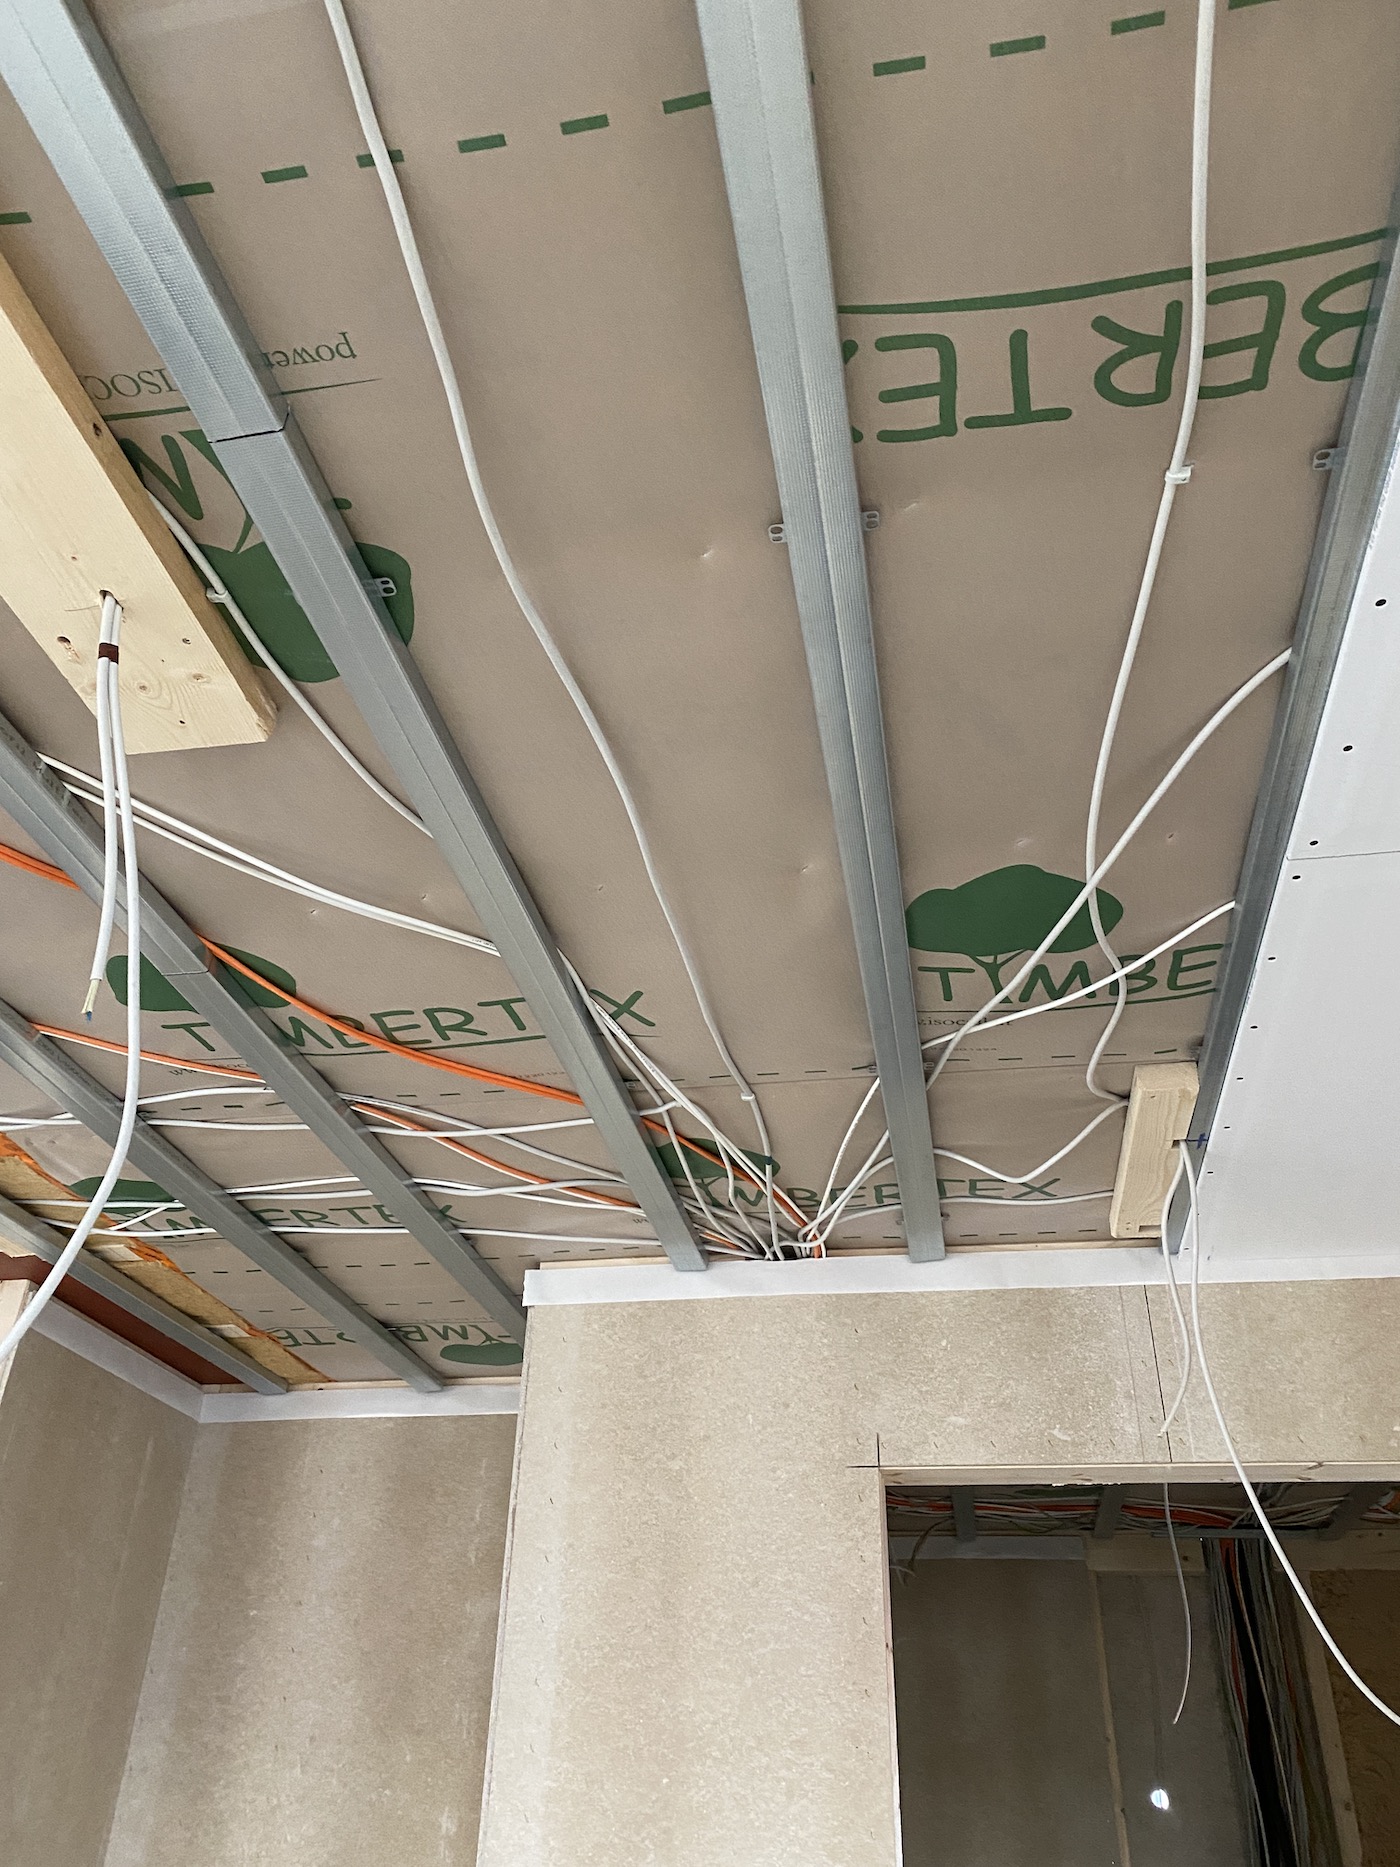 Elektrogrundinstallation Leitungsverlegung auf abgehängten Decken im neuen  Fertighaus